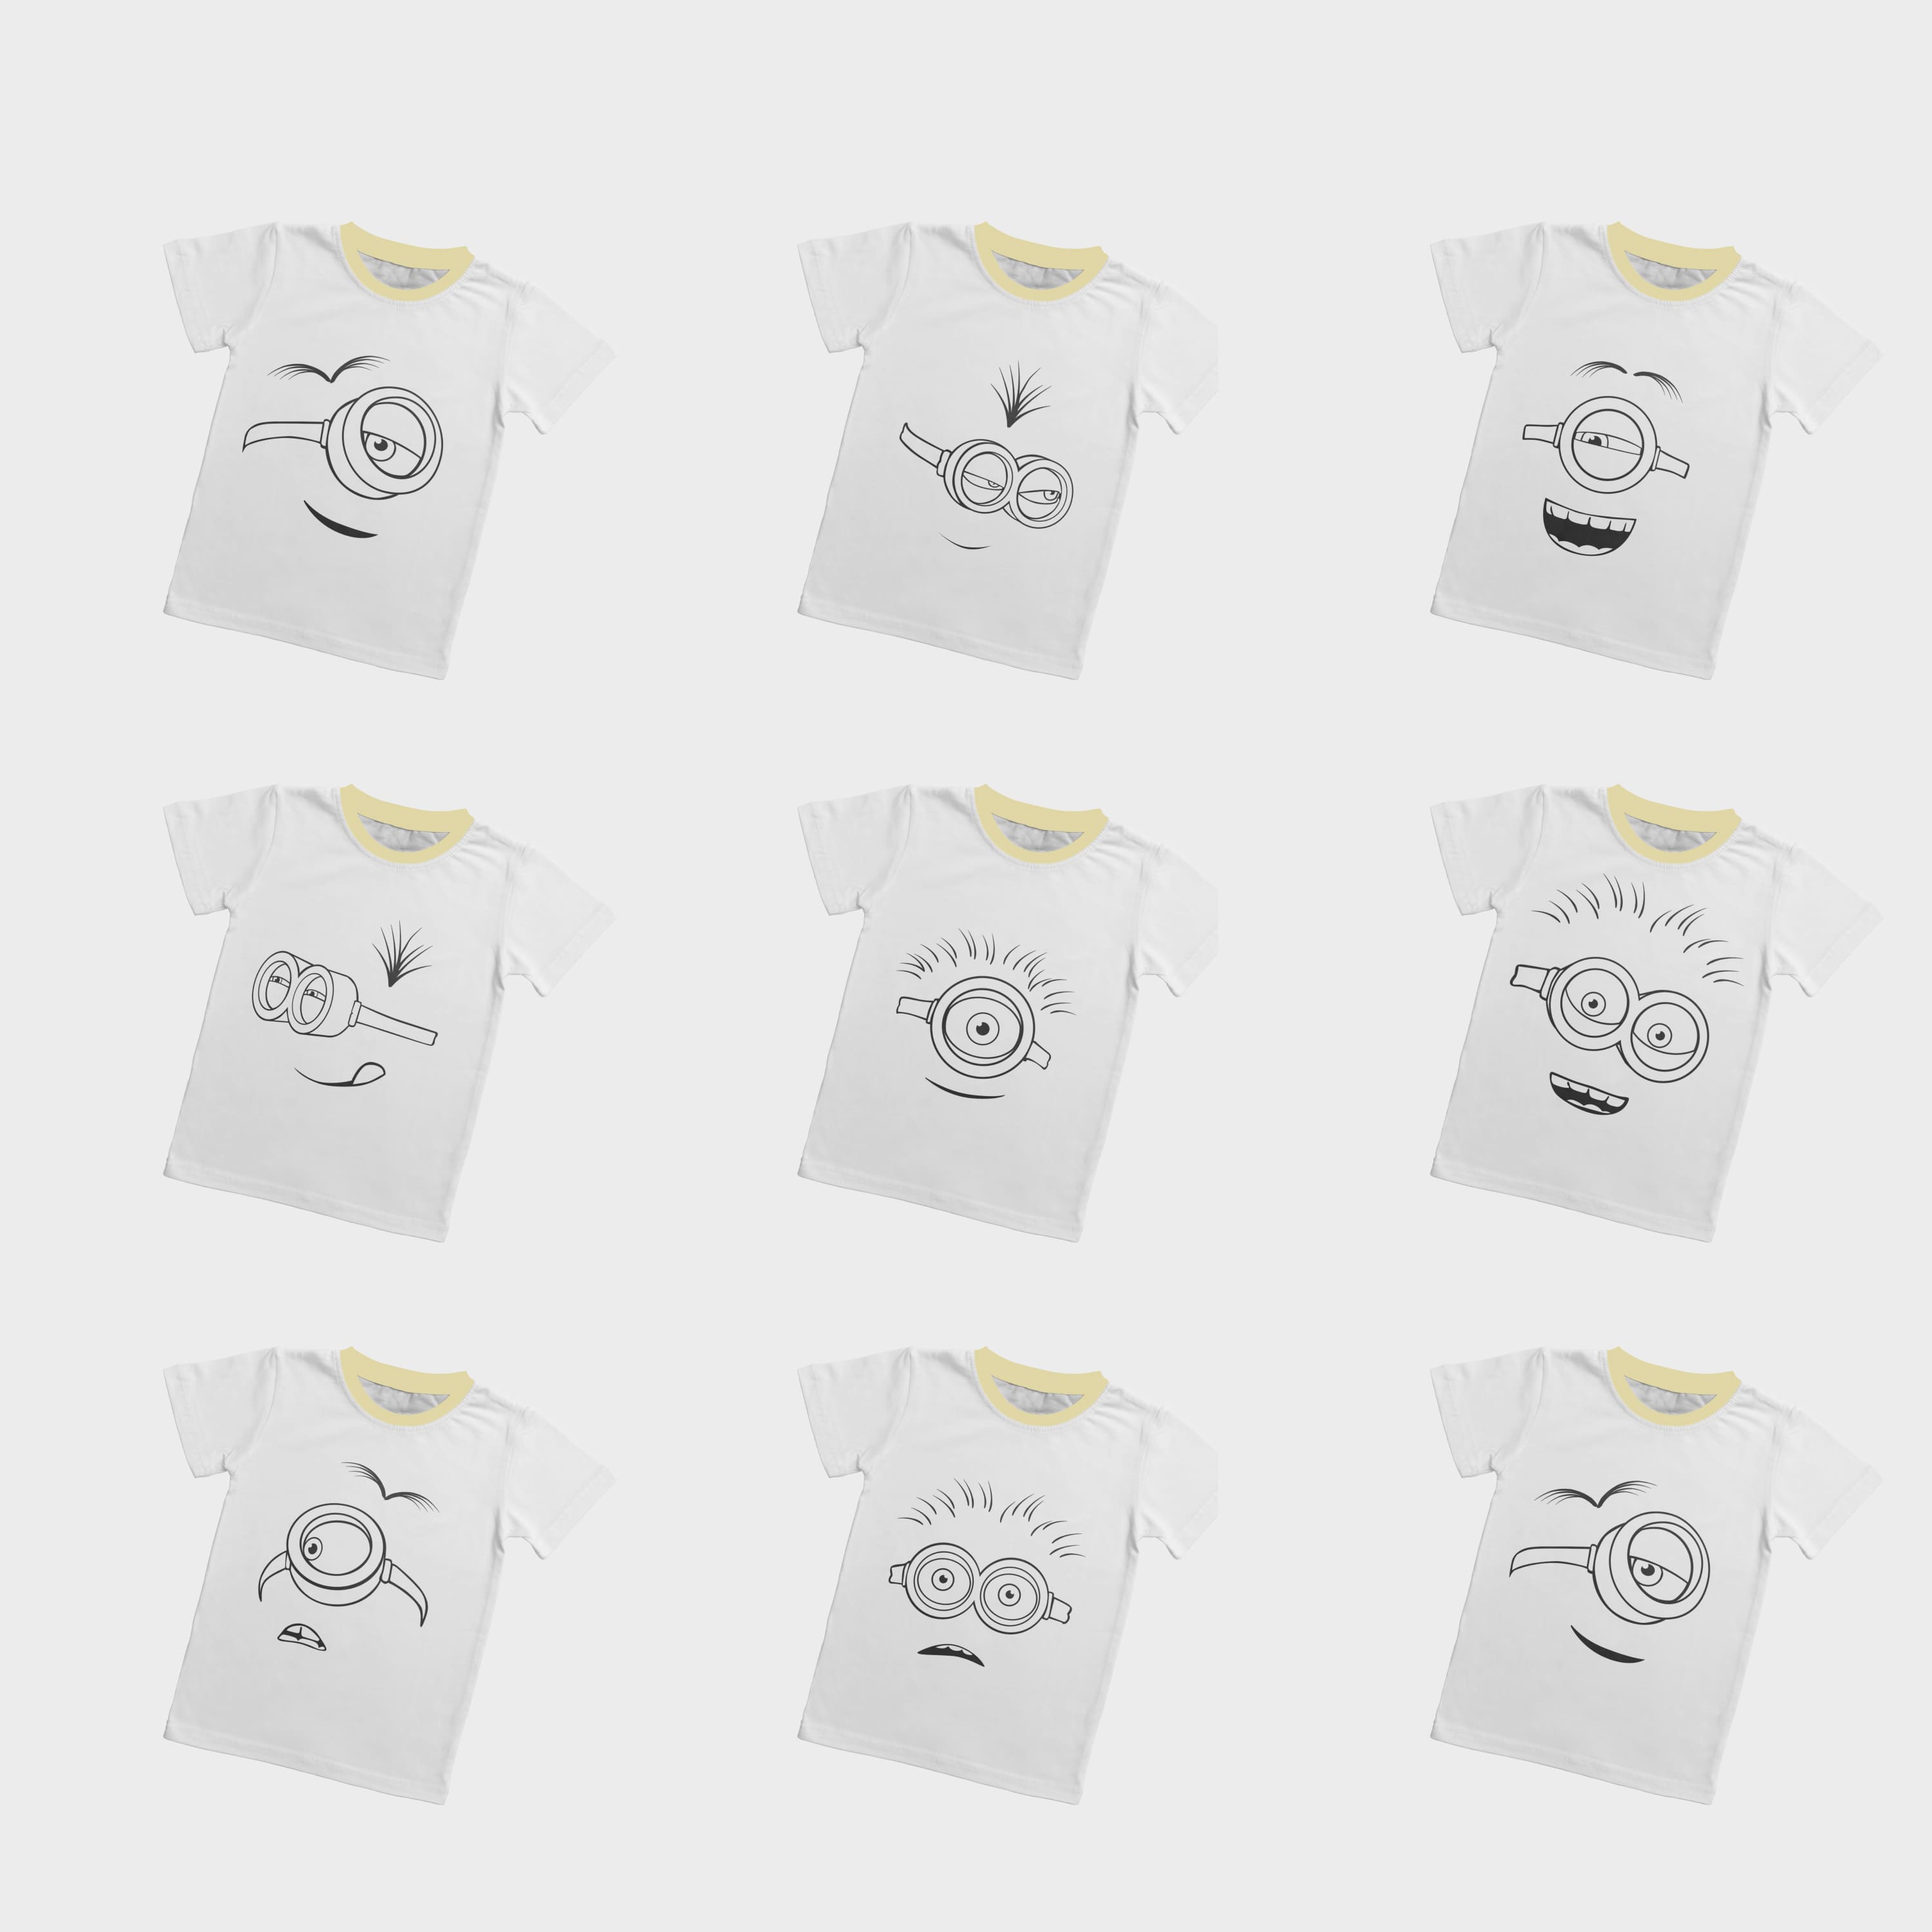 Eye Minion Face T-shirt Designs Cover.